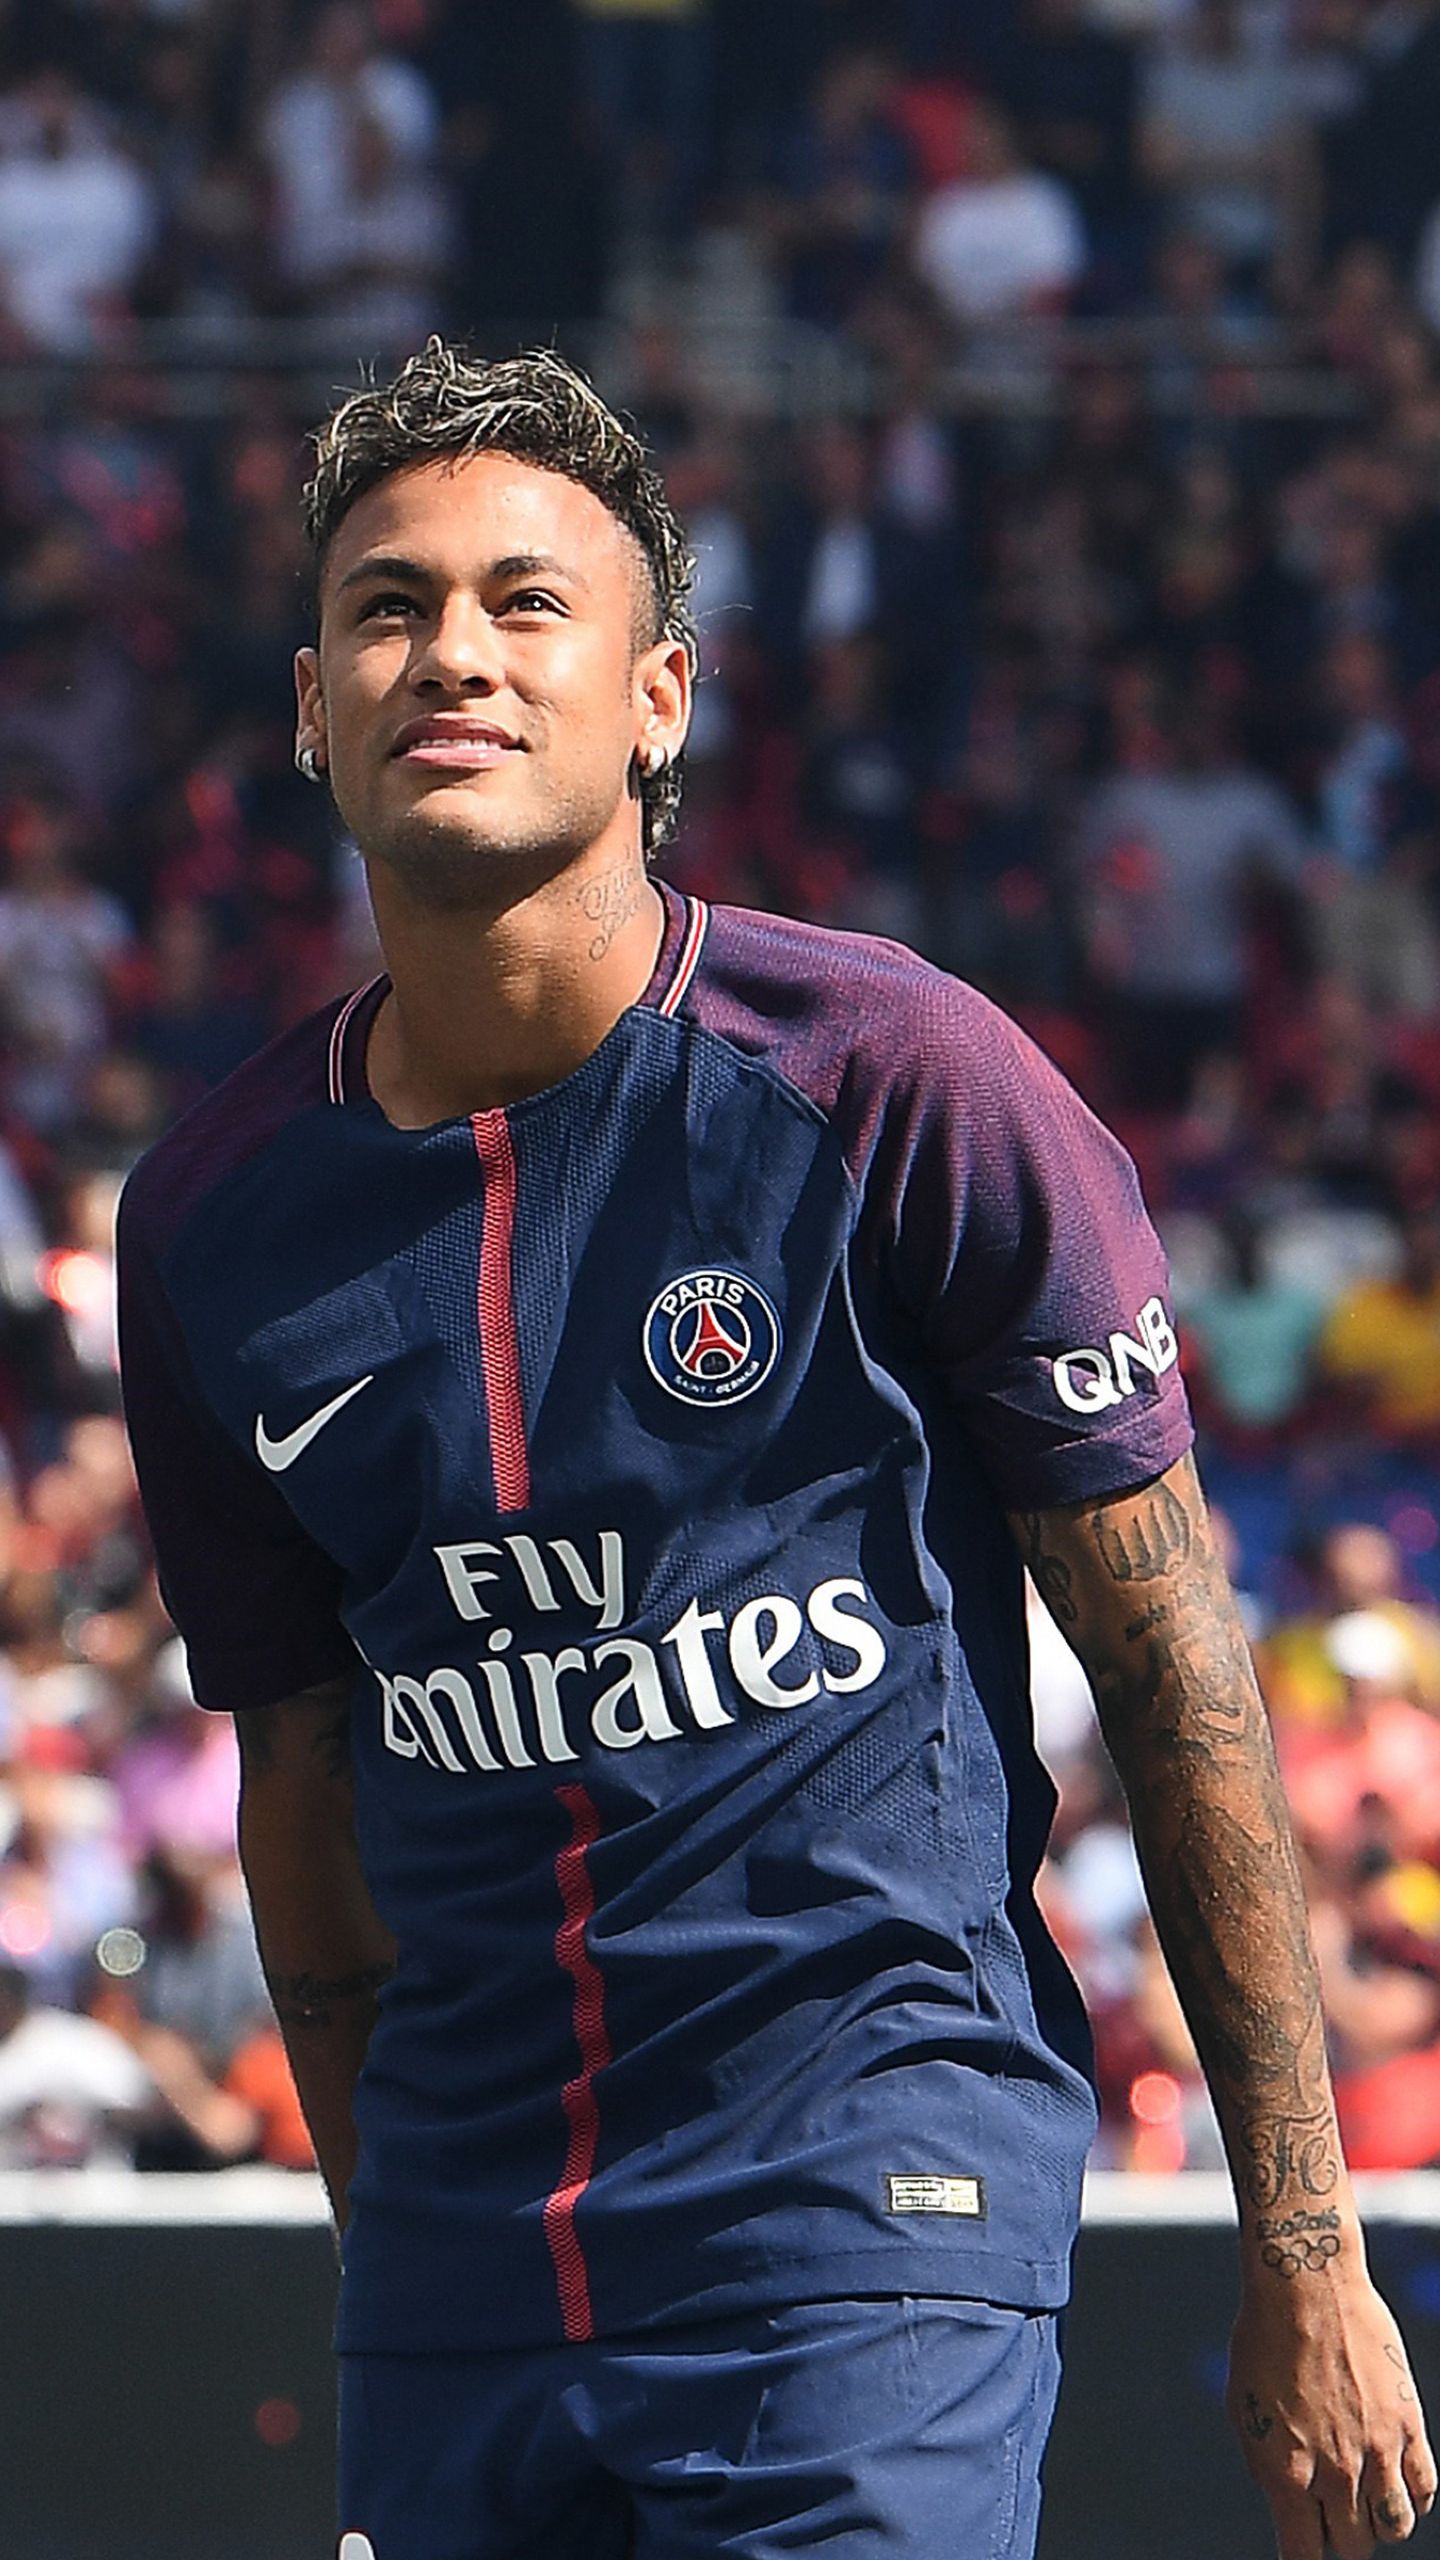 50 Hình Ảnh Neymar Jr 2019 Đẹp Và Mới Nhất - Hà Nội Spirit Of Place